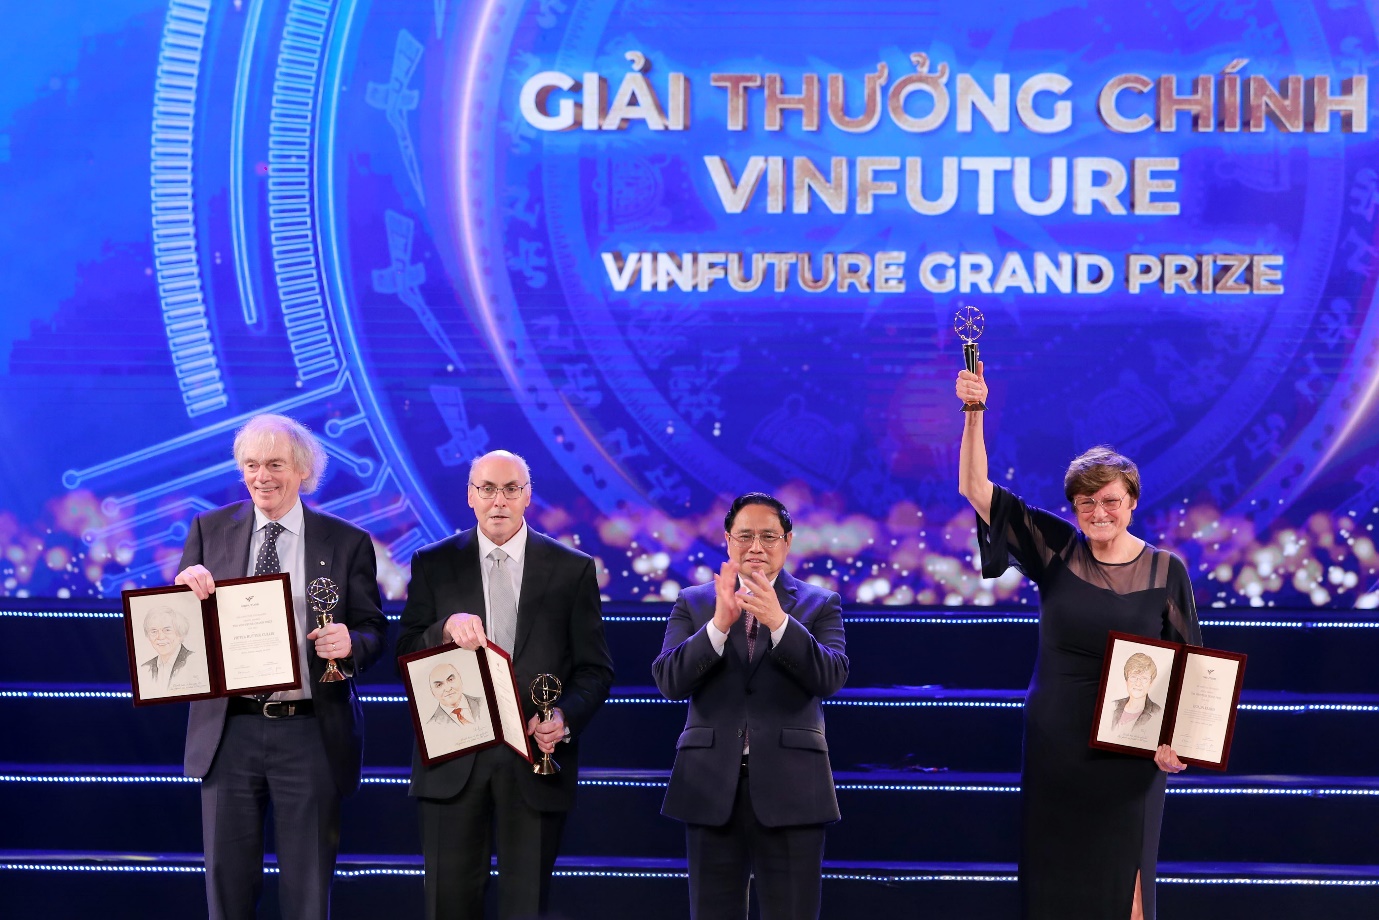 Giáo sư Cullis: VinFuture kết nối Việt Nam với thế giới bằng sứ mệnh khoa học - Ảnh 1.